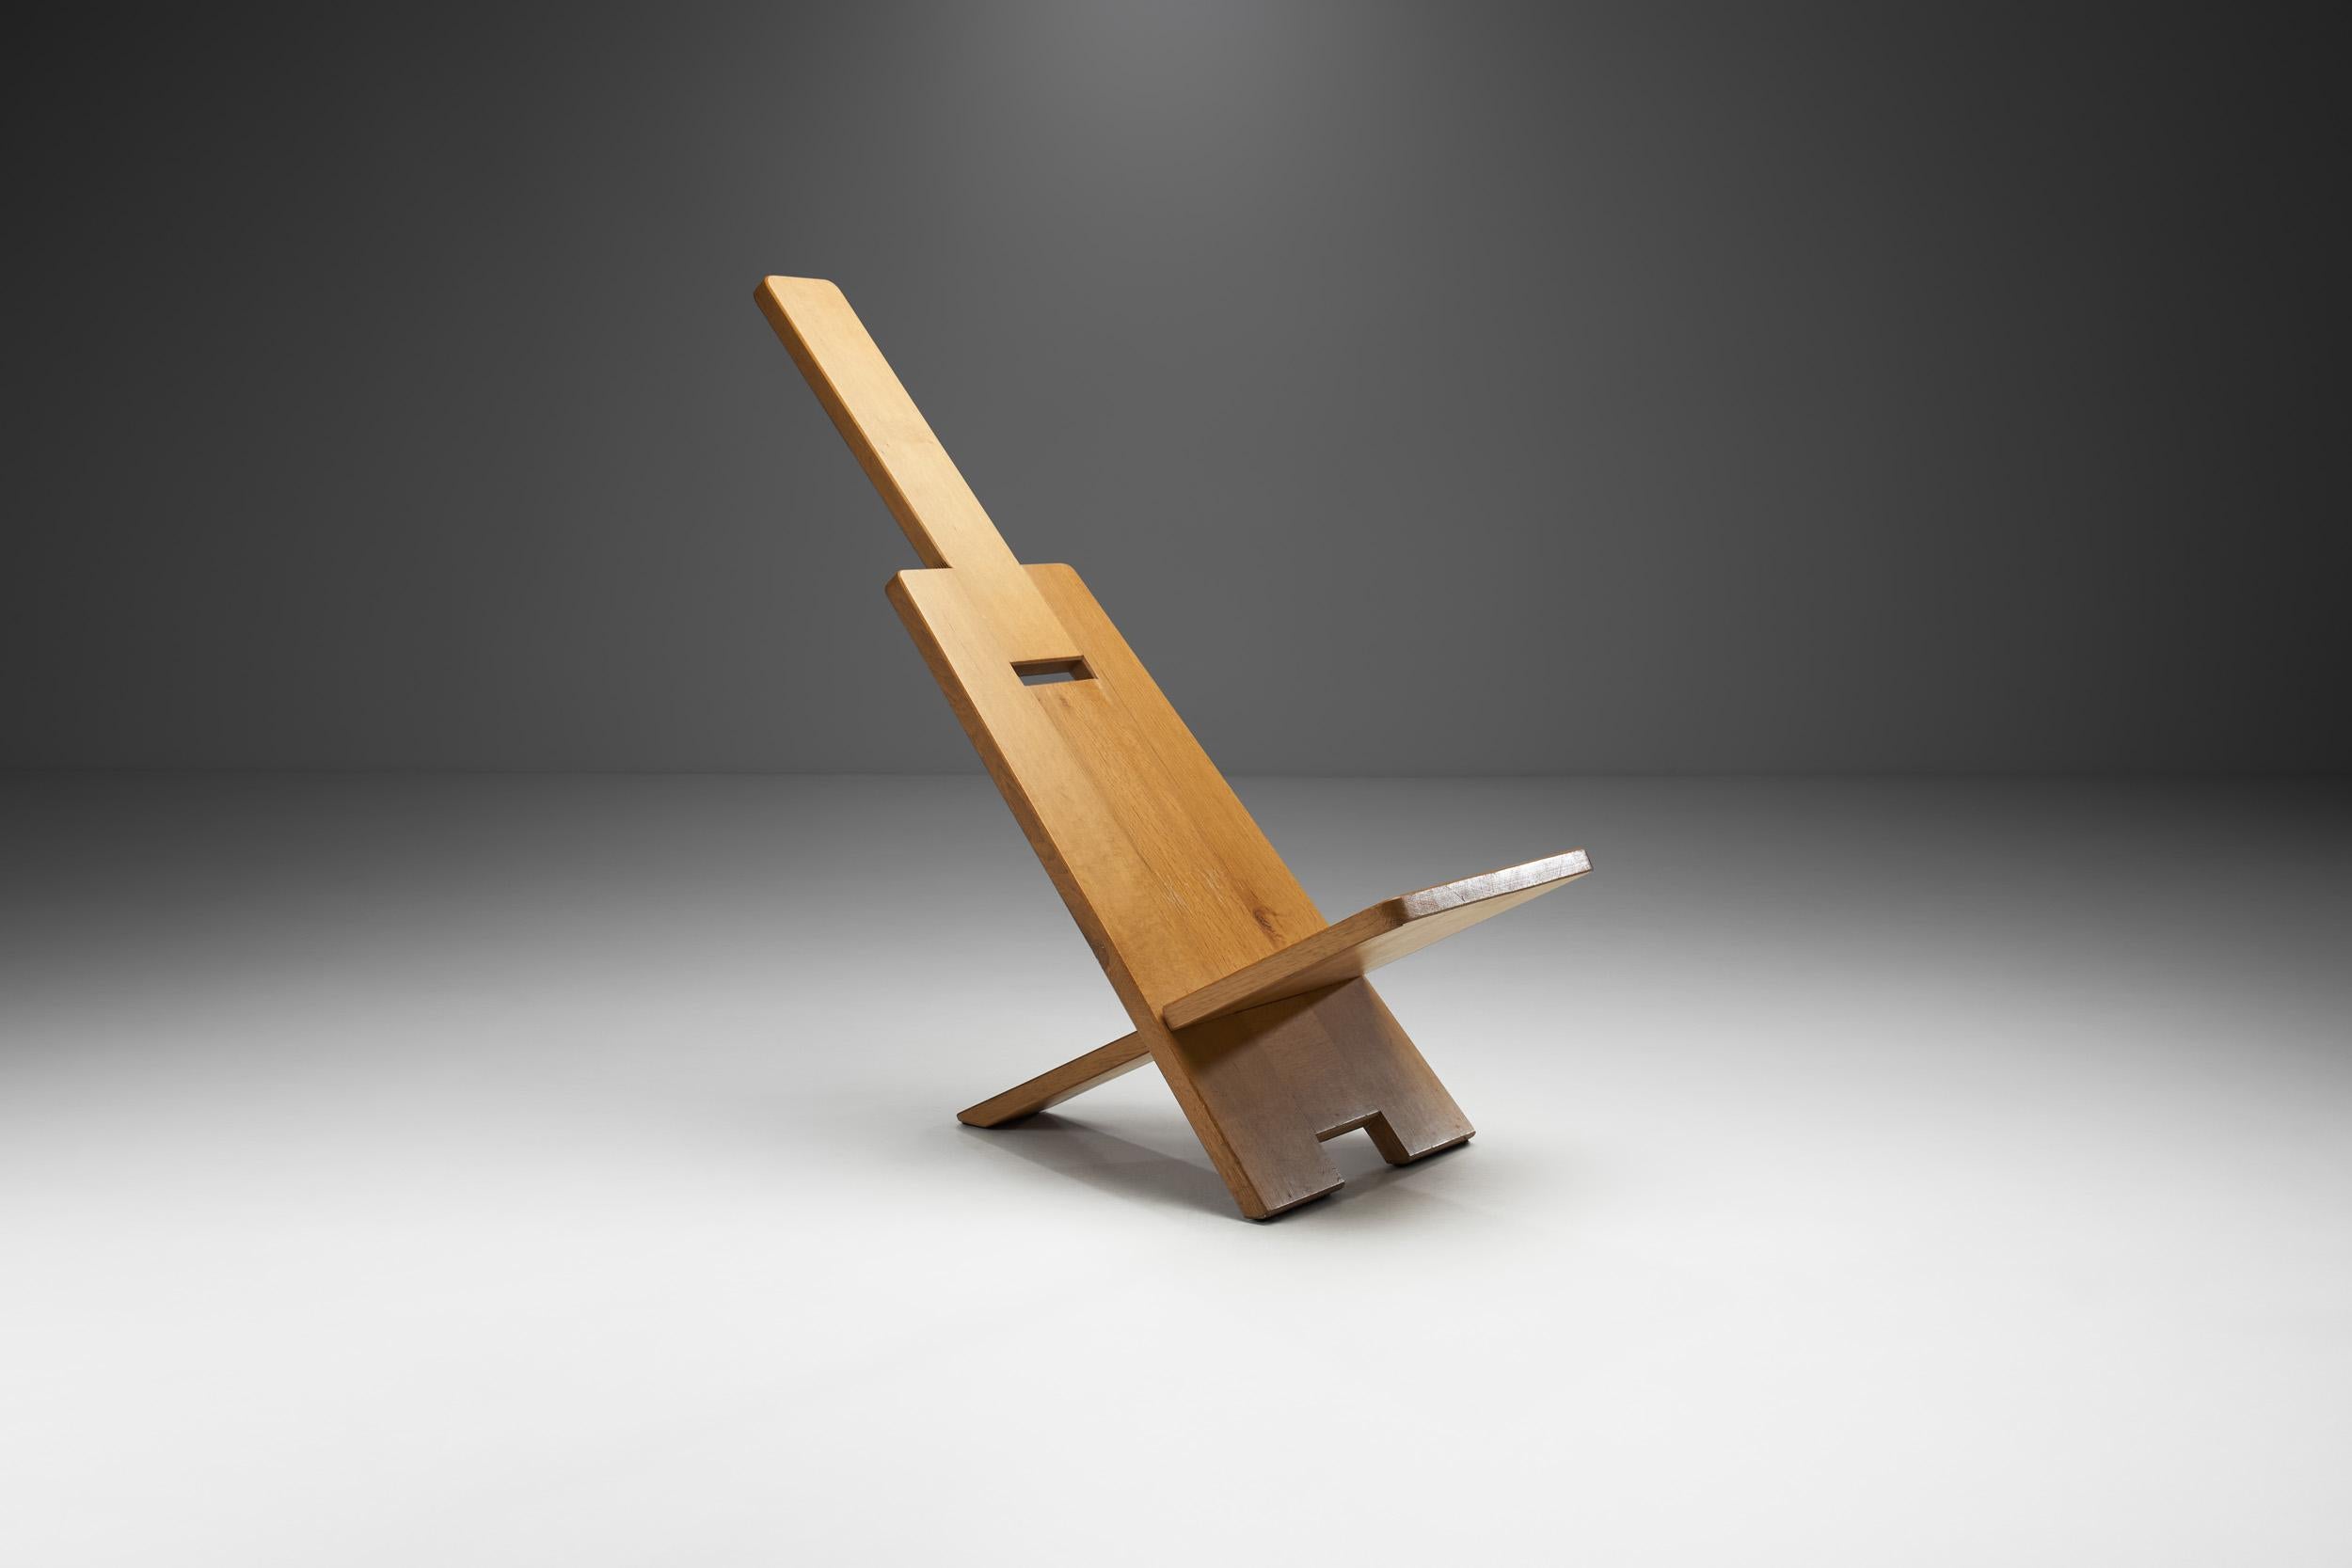 Cette chaise sculpturale du designer français Alain Gaubert est un clin d'œil au design minimaliste. La construction est aussi ingénieusement simple qu'elle est visuellement frappante.

La chaise est fabriquée en chêne massif et chaque chaise a été